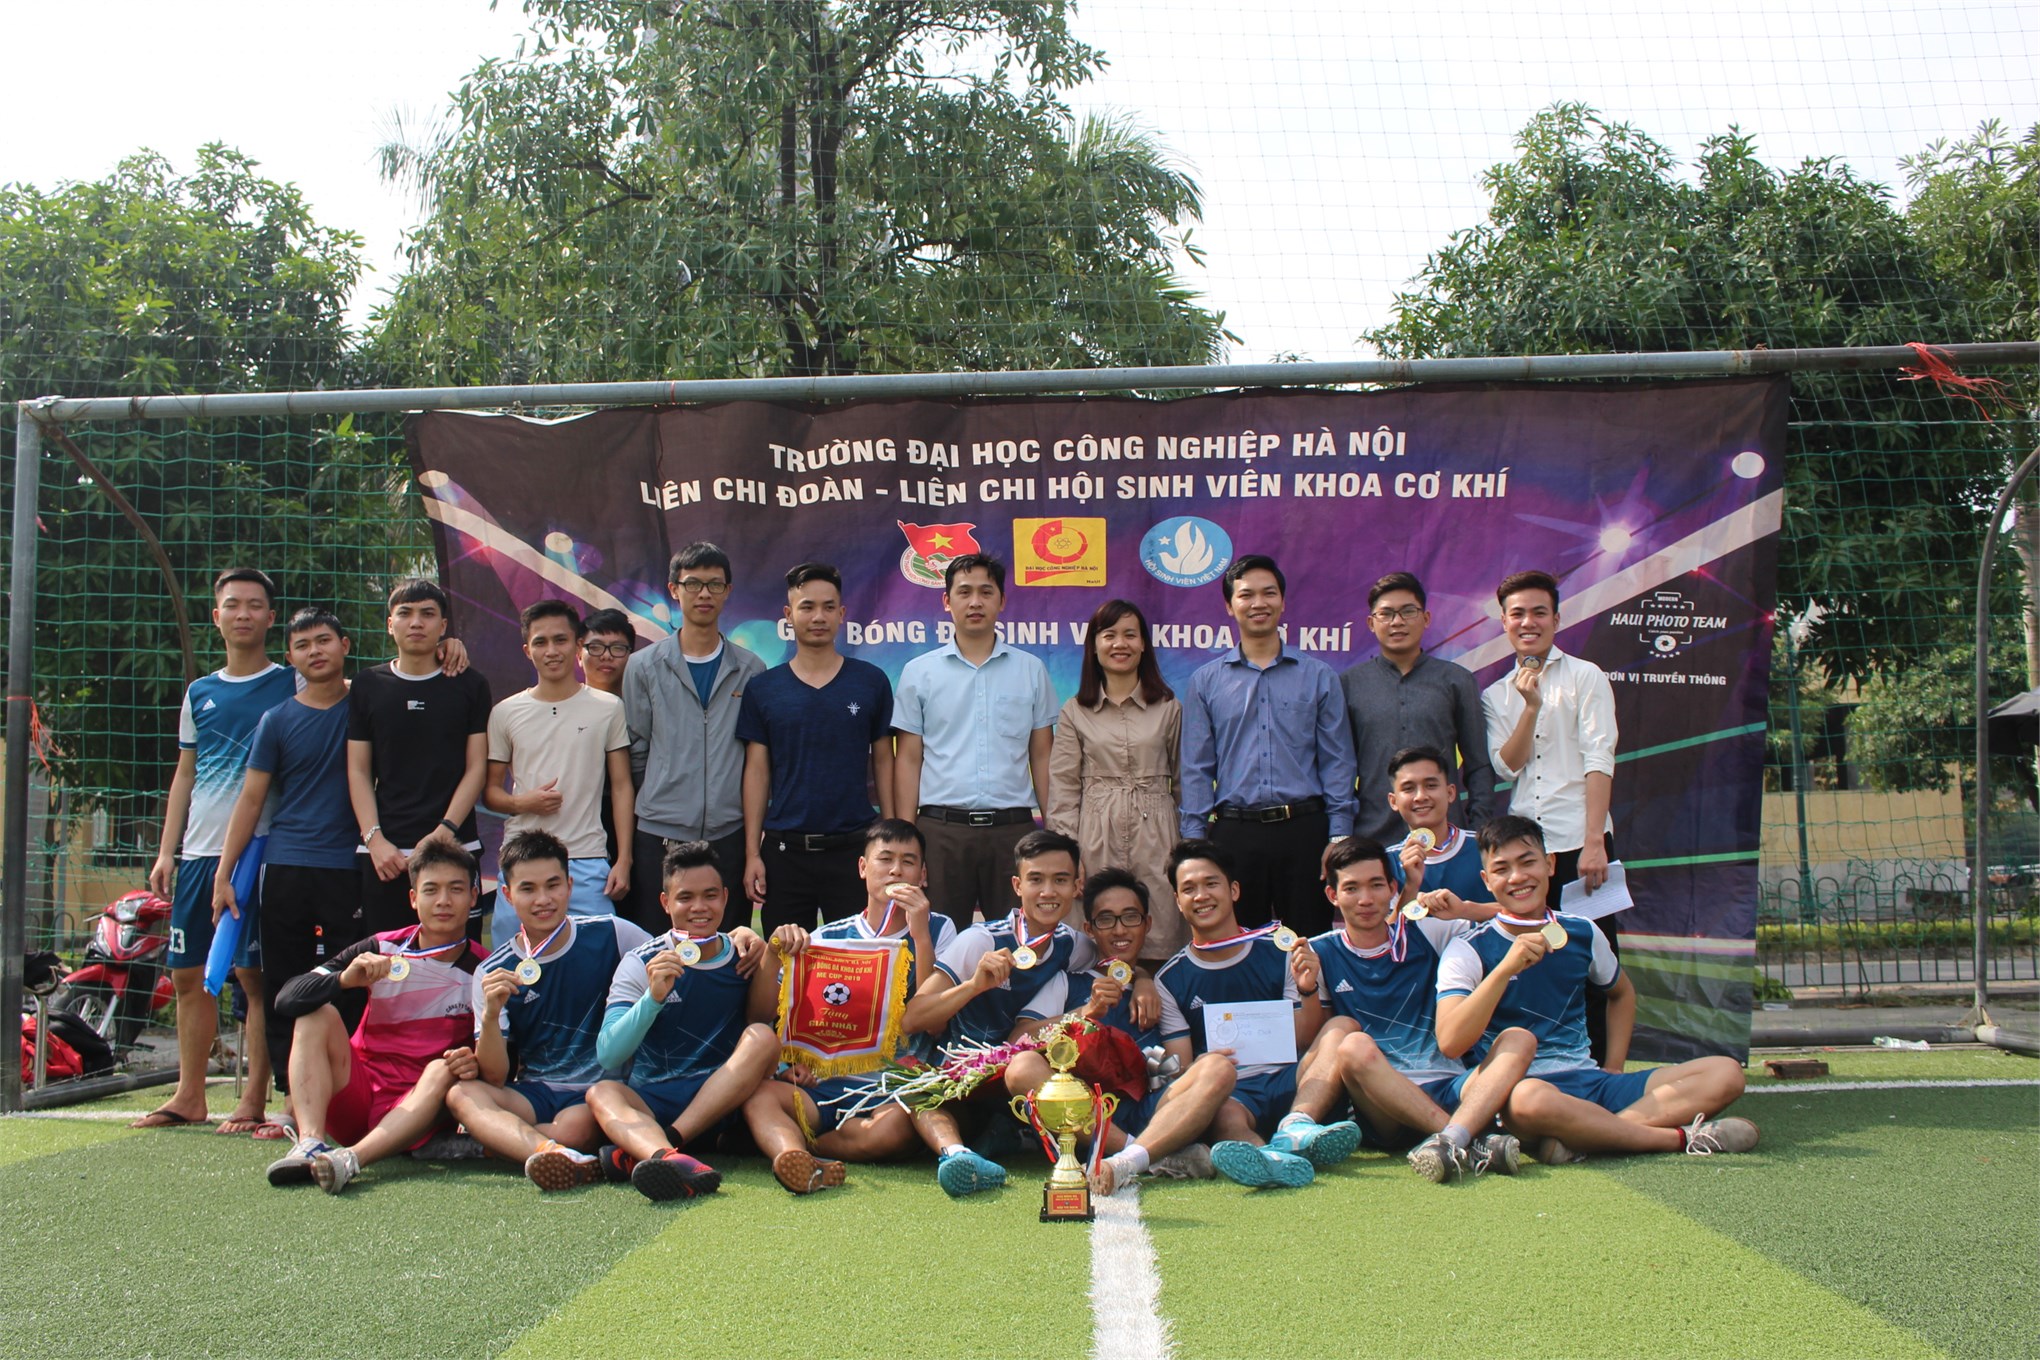 Chung kết bóng đá nam Khoa Cơ khí: phần thưởng xứng đáng cho nhà vô địch